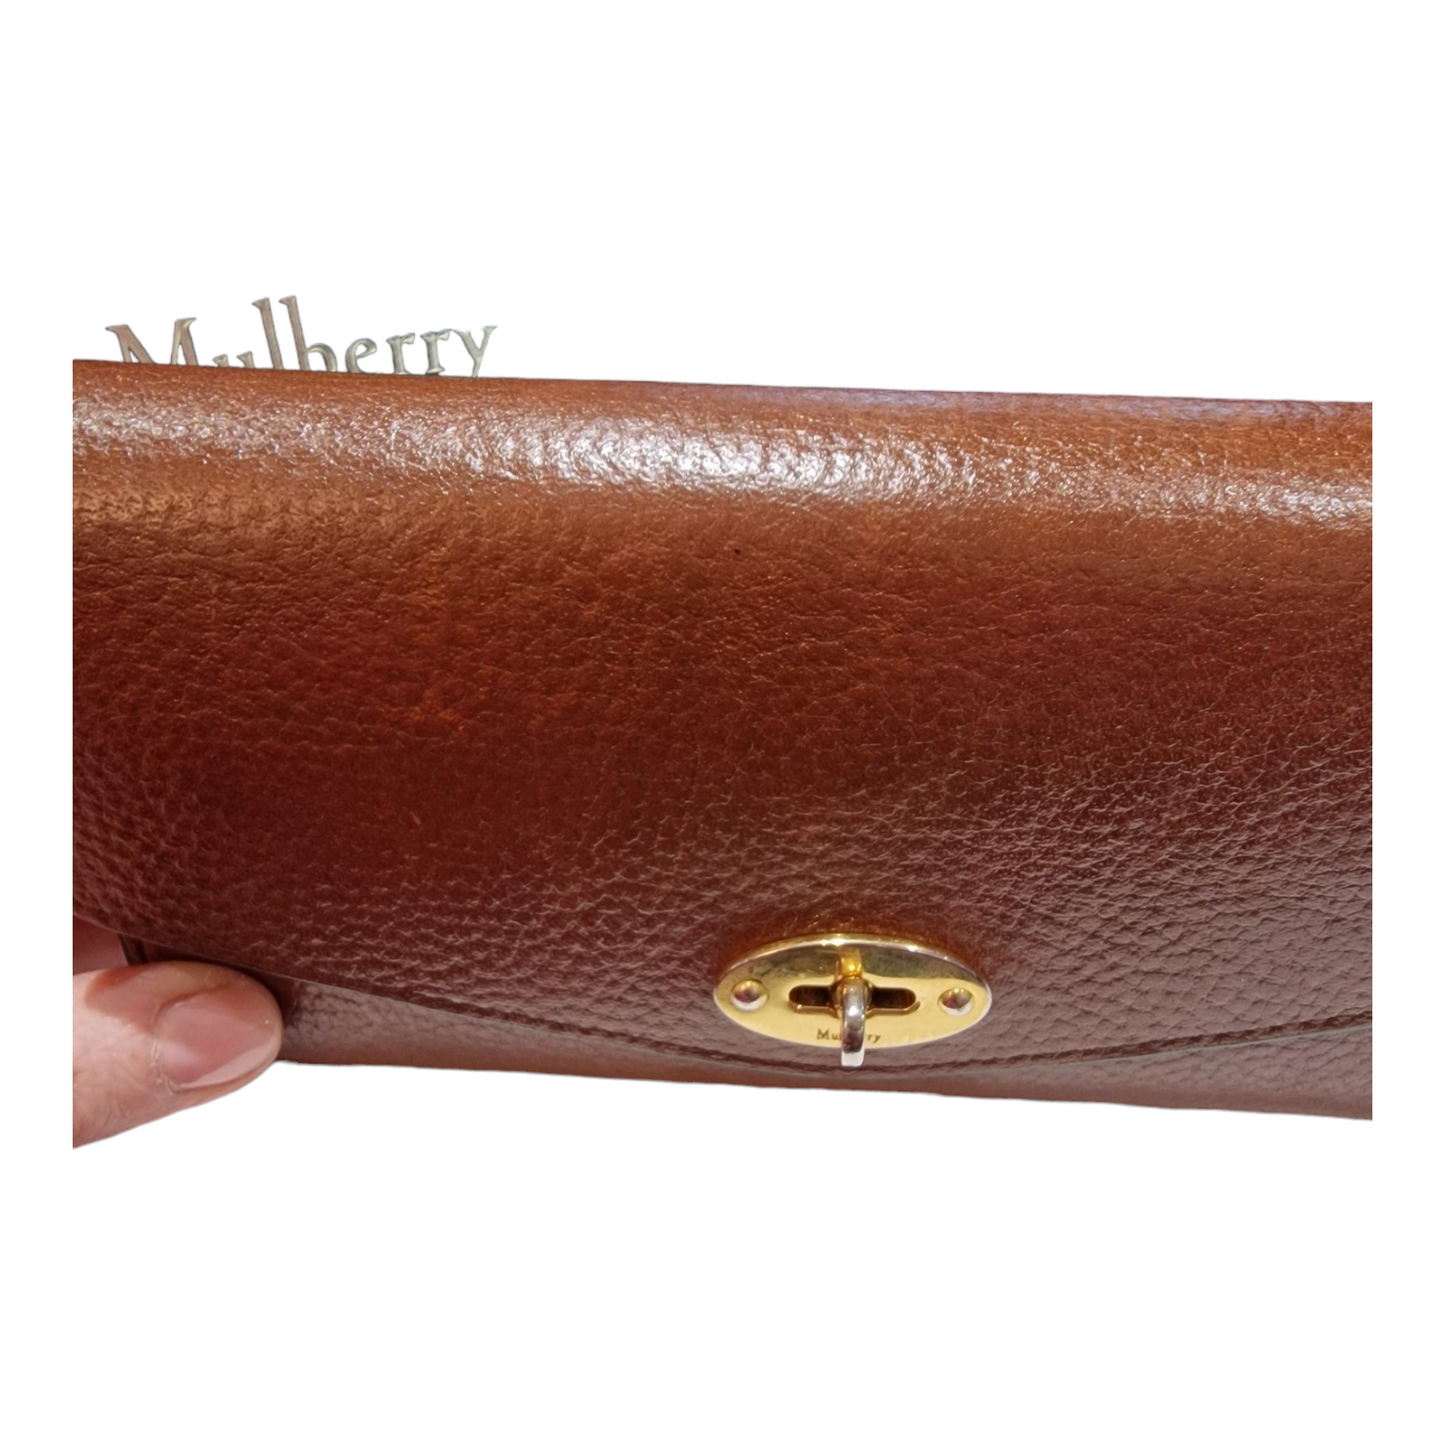 Mulberry Darley Leather Wallet, Oak